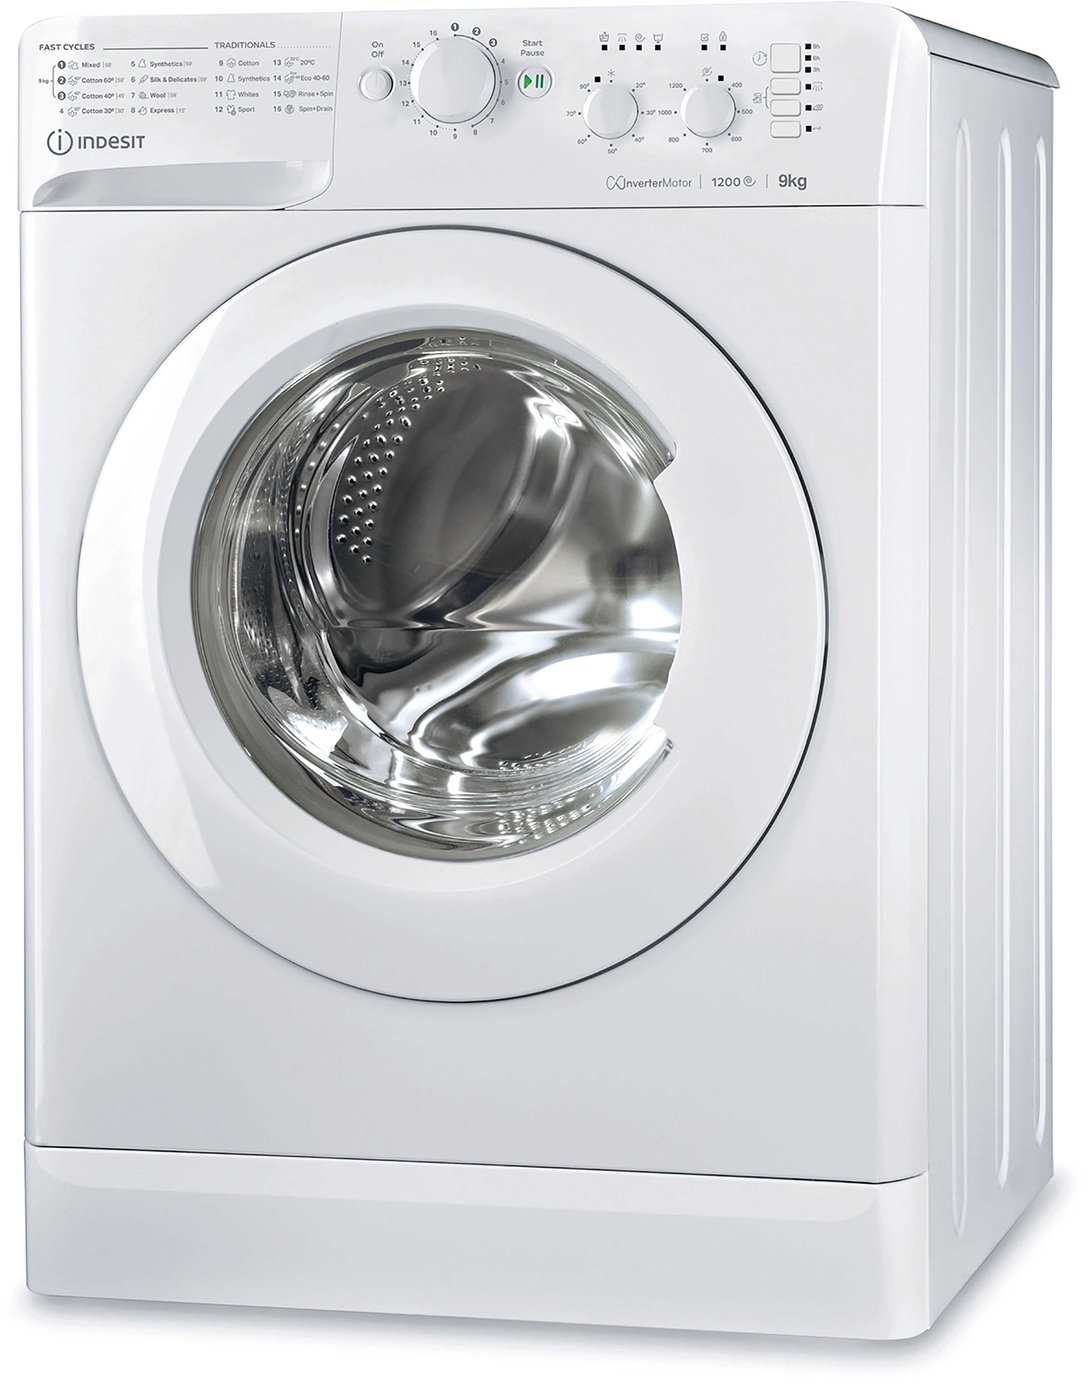 eco spin washing machine